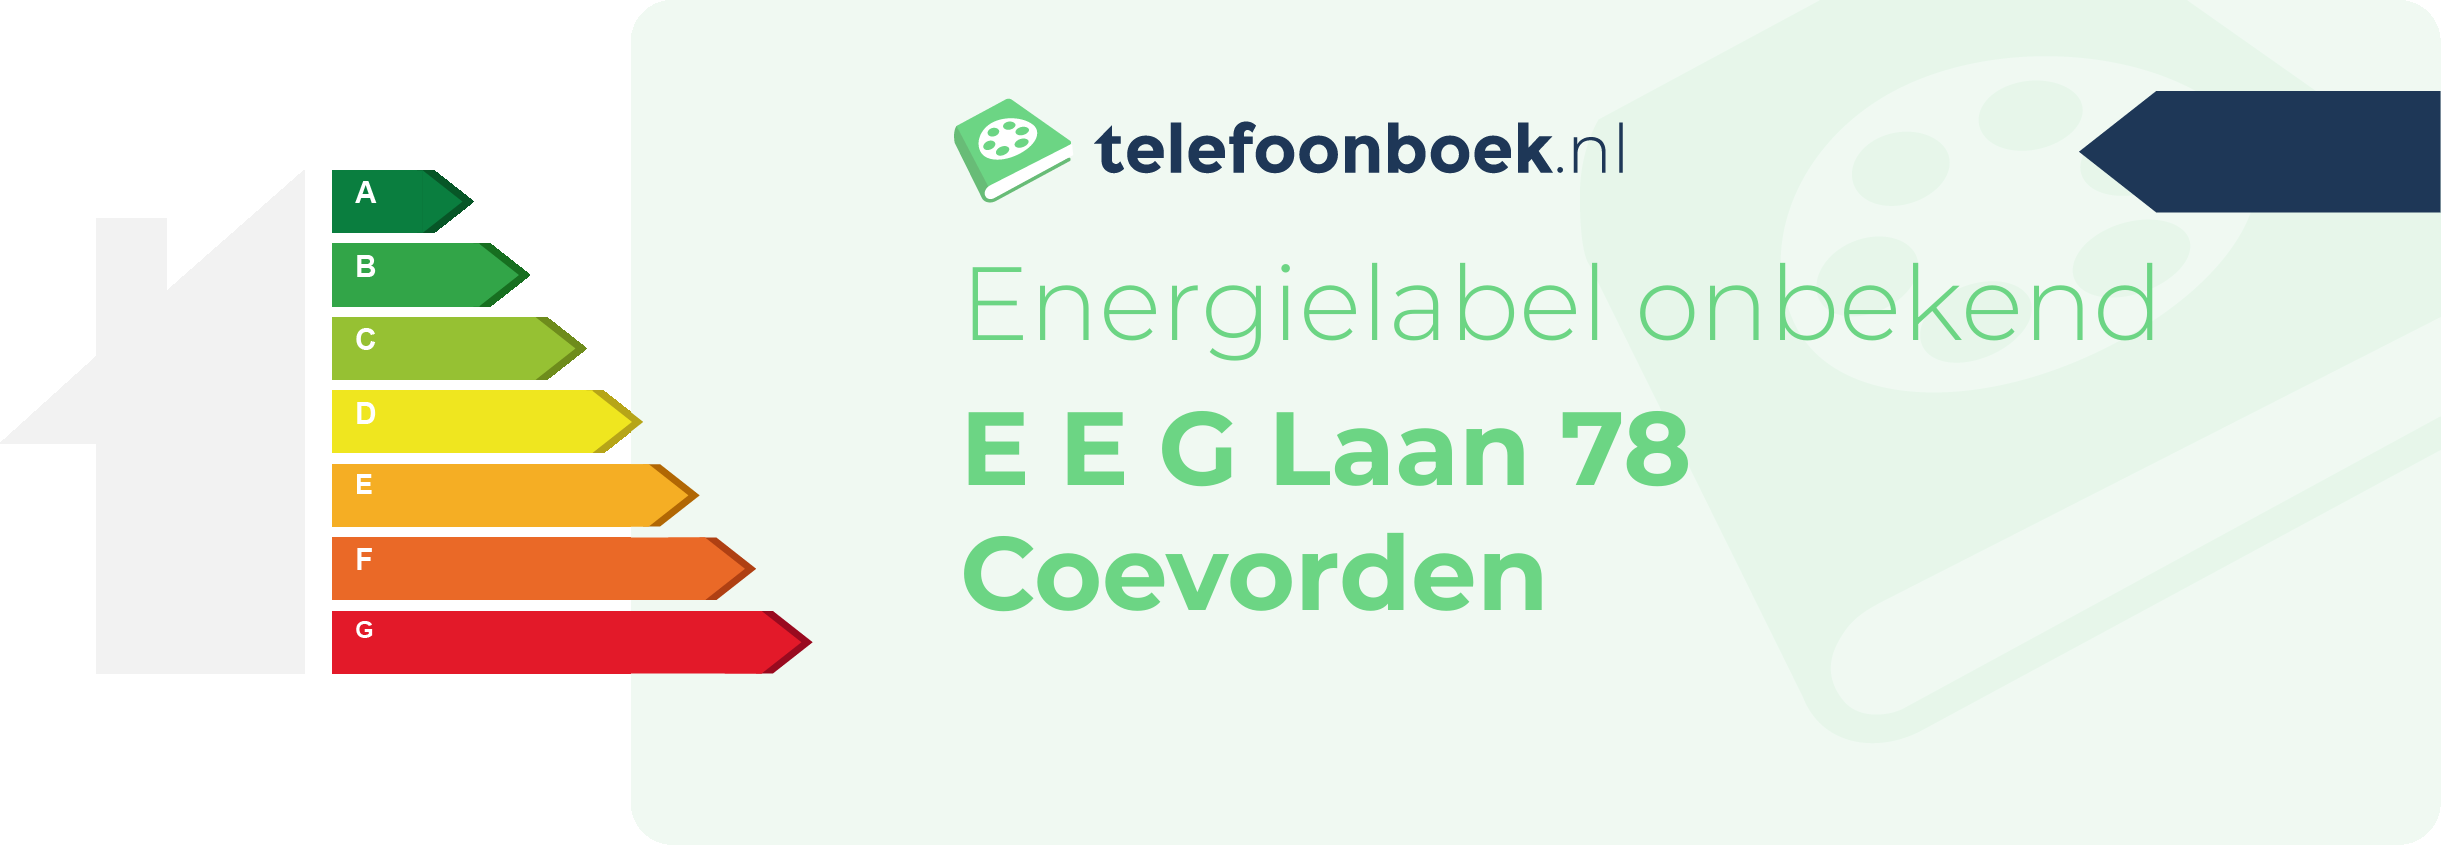 Energielabel E E G Laan 78 Coevorden